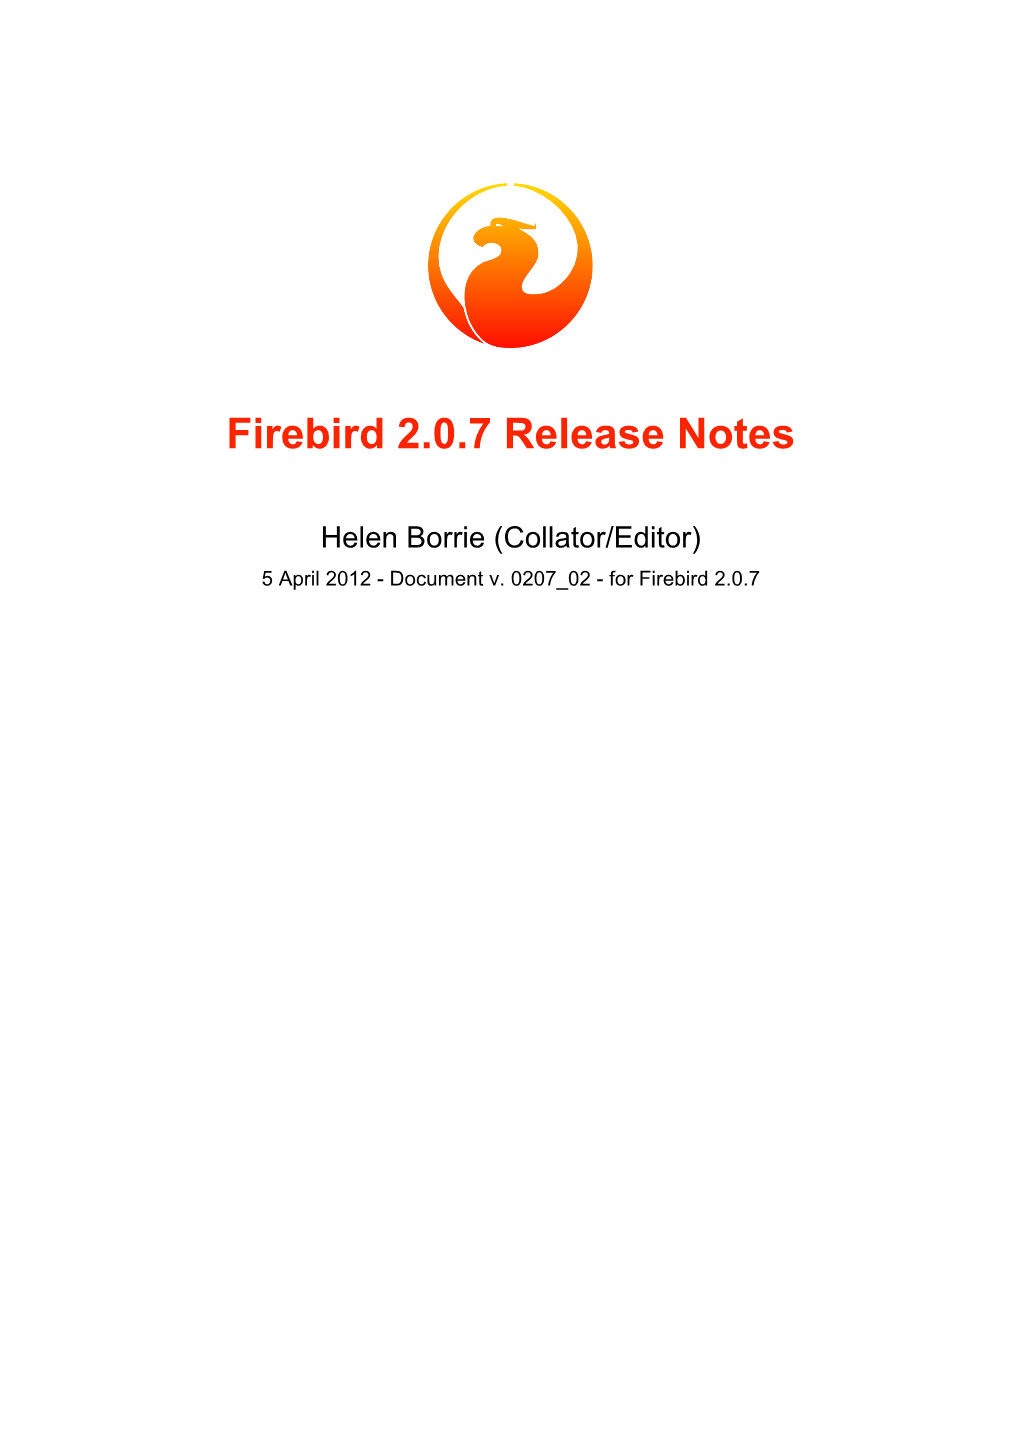 Firebird 2.0.7 Release Notes